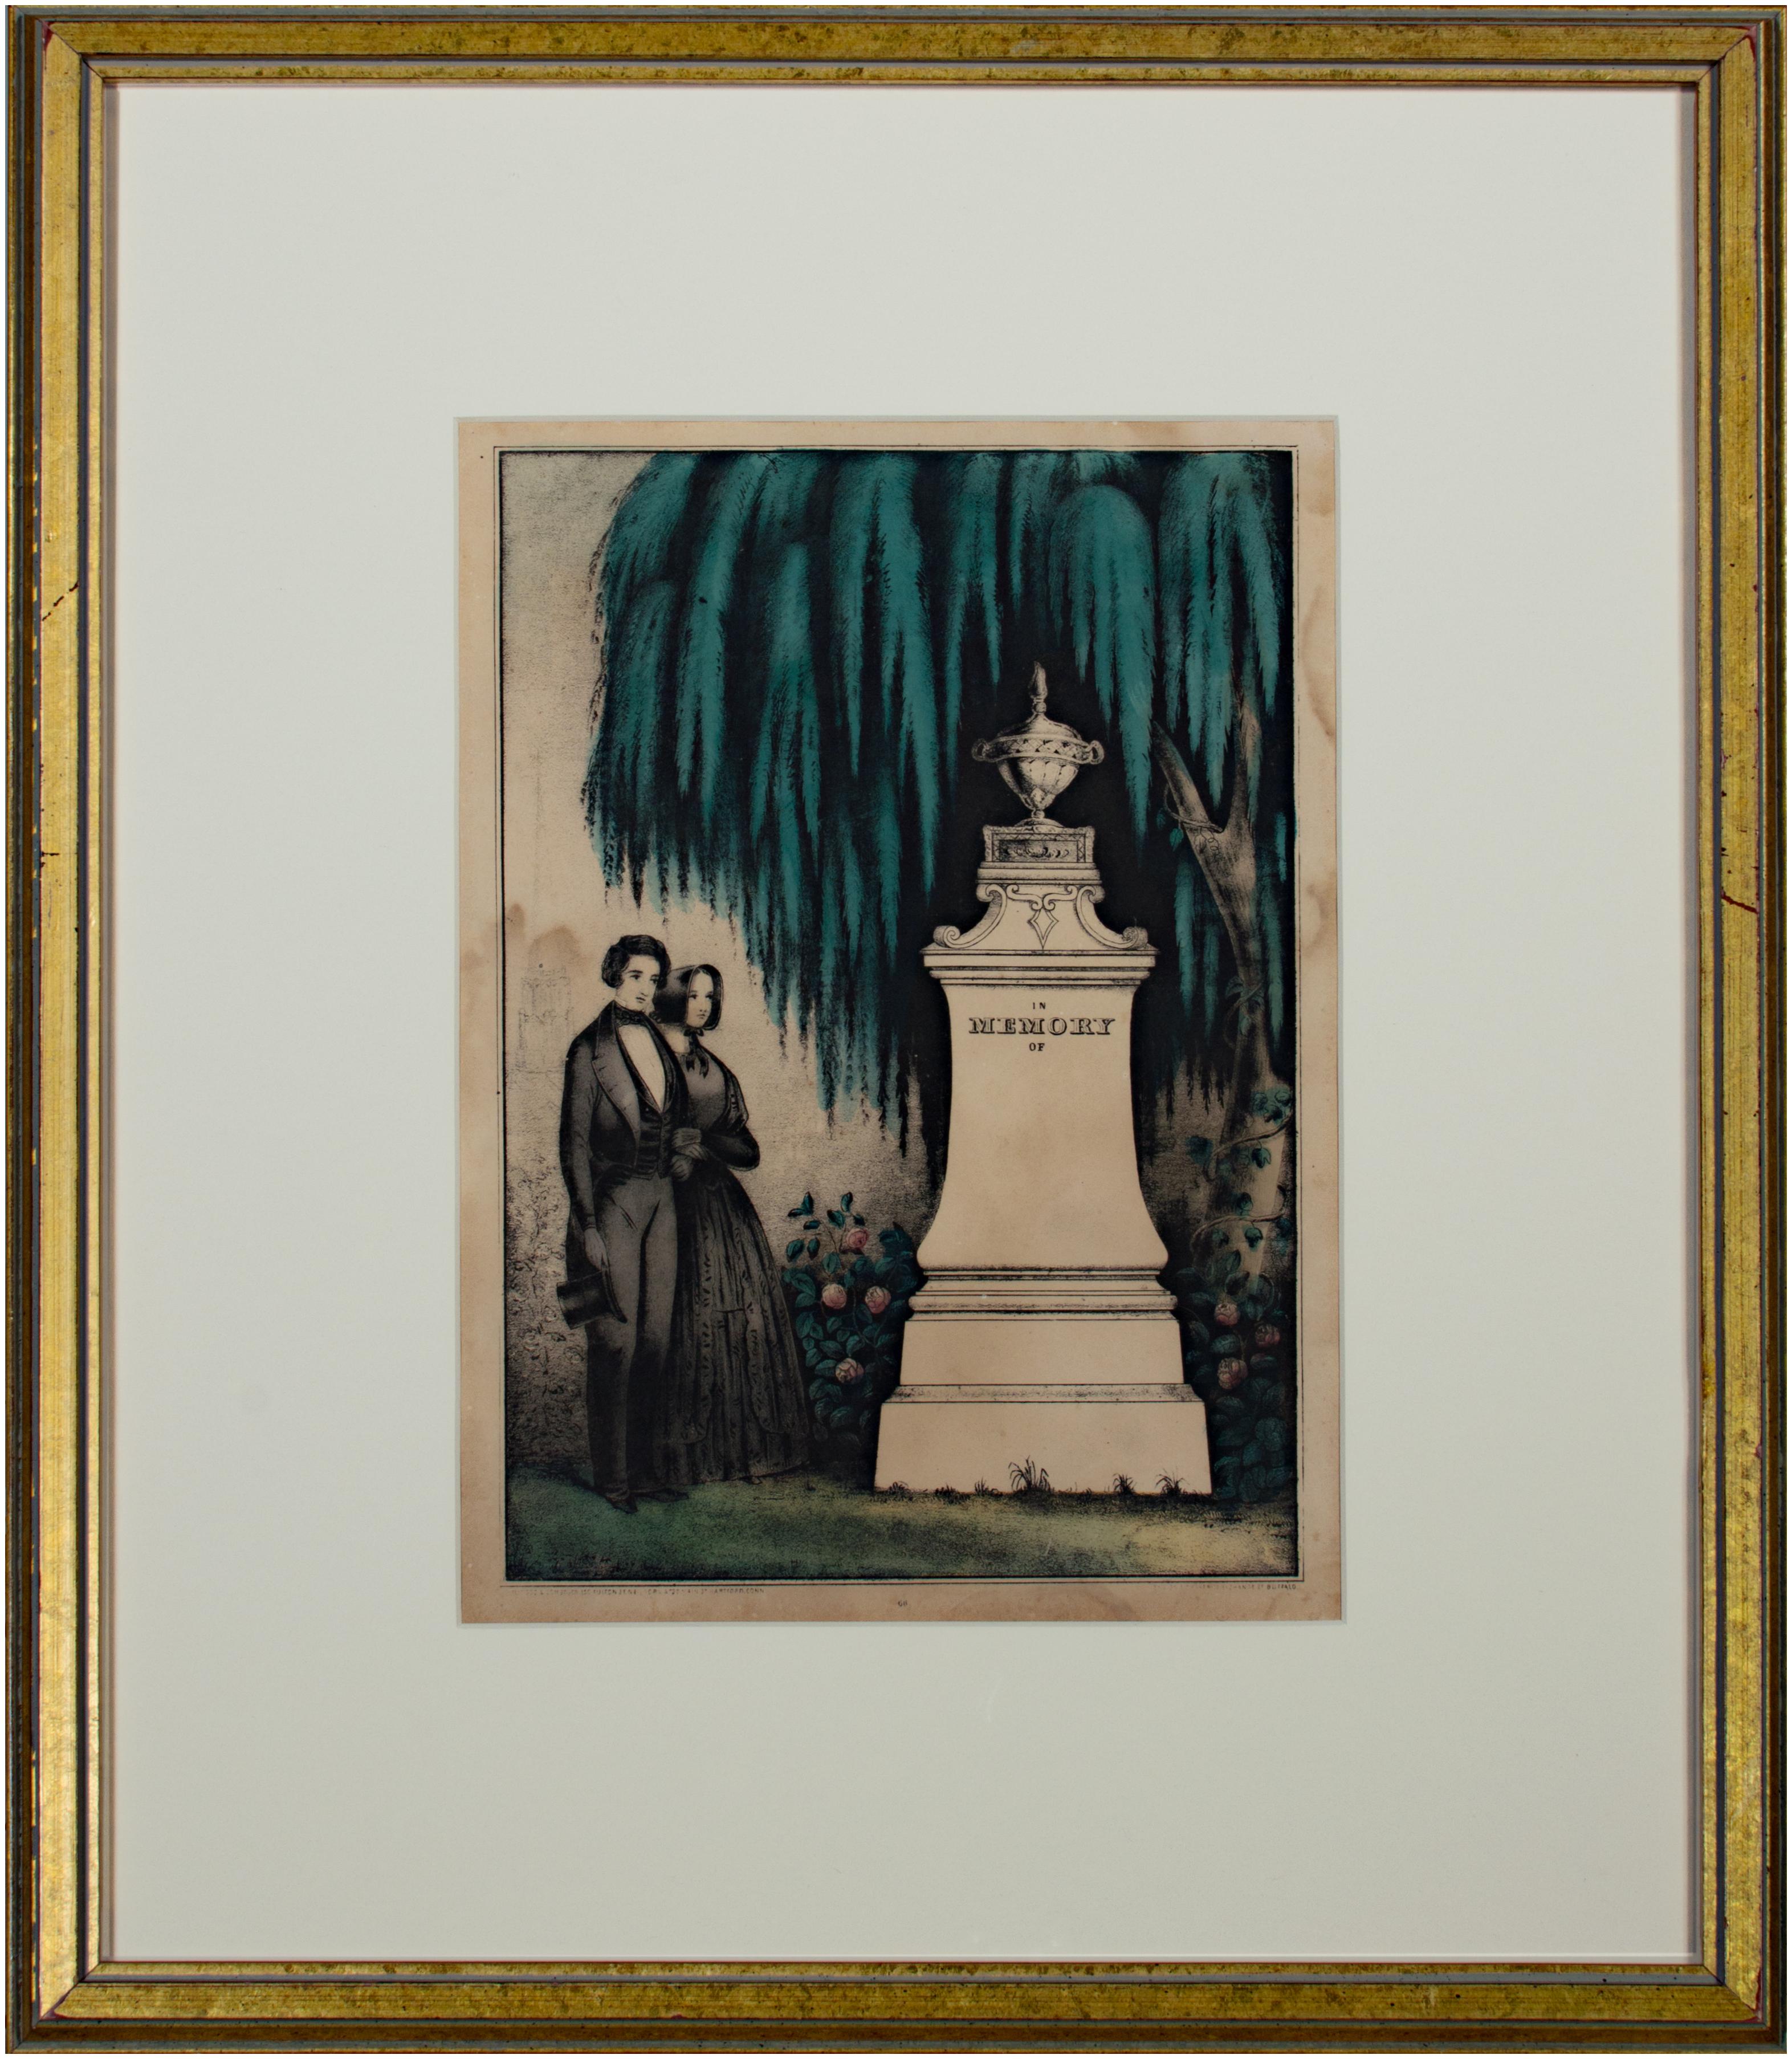 Cette lithographie coloriée à la main a été produite dans le cadre de la culture des funérailles et du deuil aux États-Unis au XIXe siècle. Avant l'essor de la gravure dans les années 1830, cependant, ces images commémoratives peu coûteuses